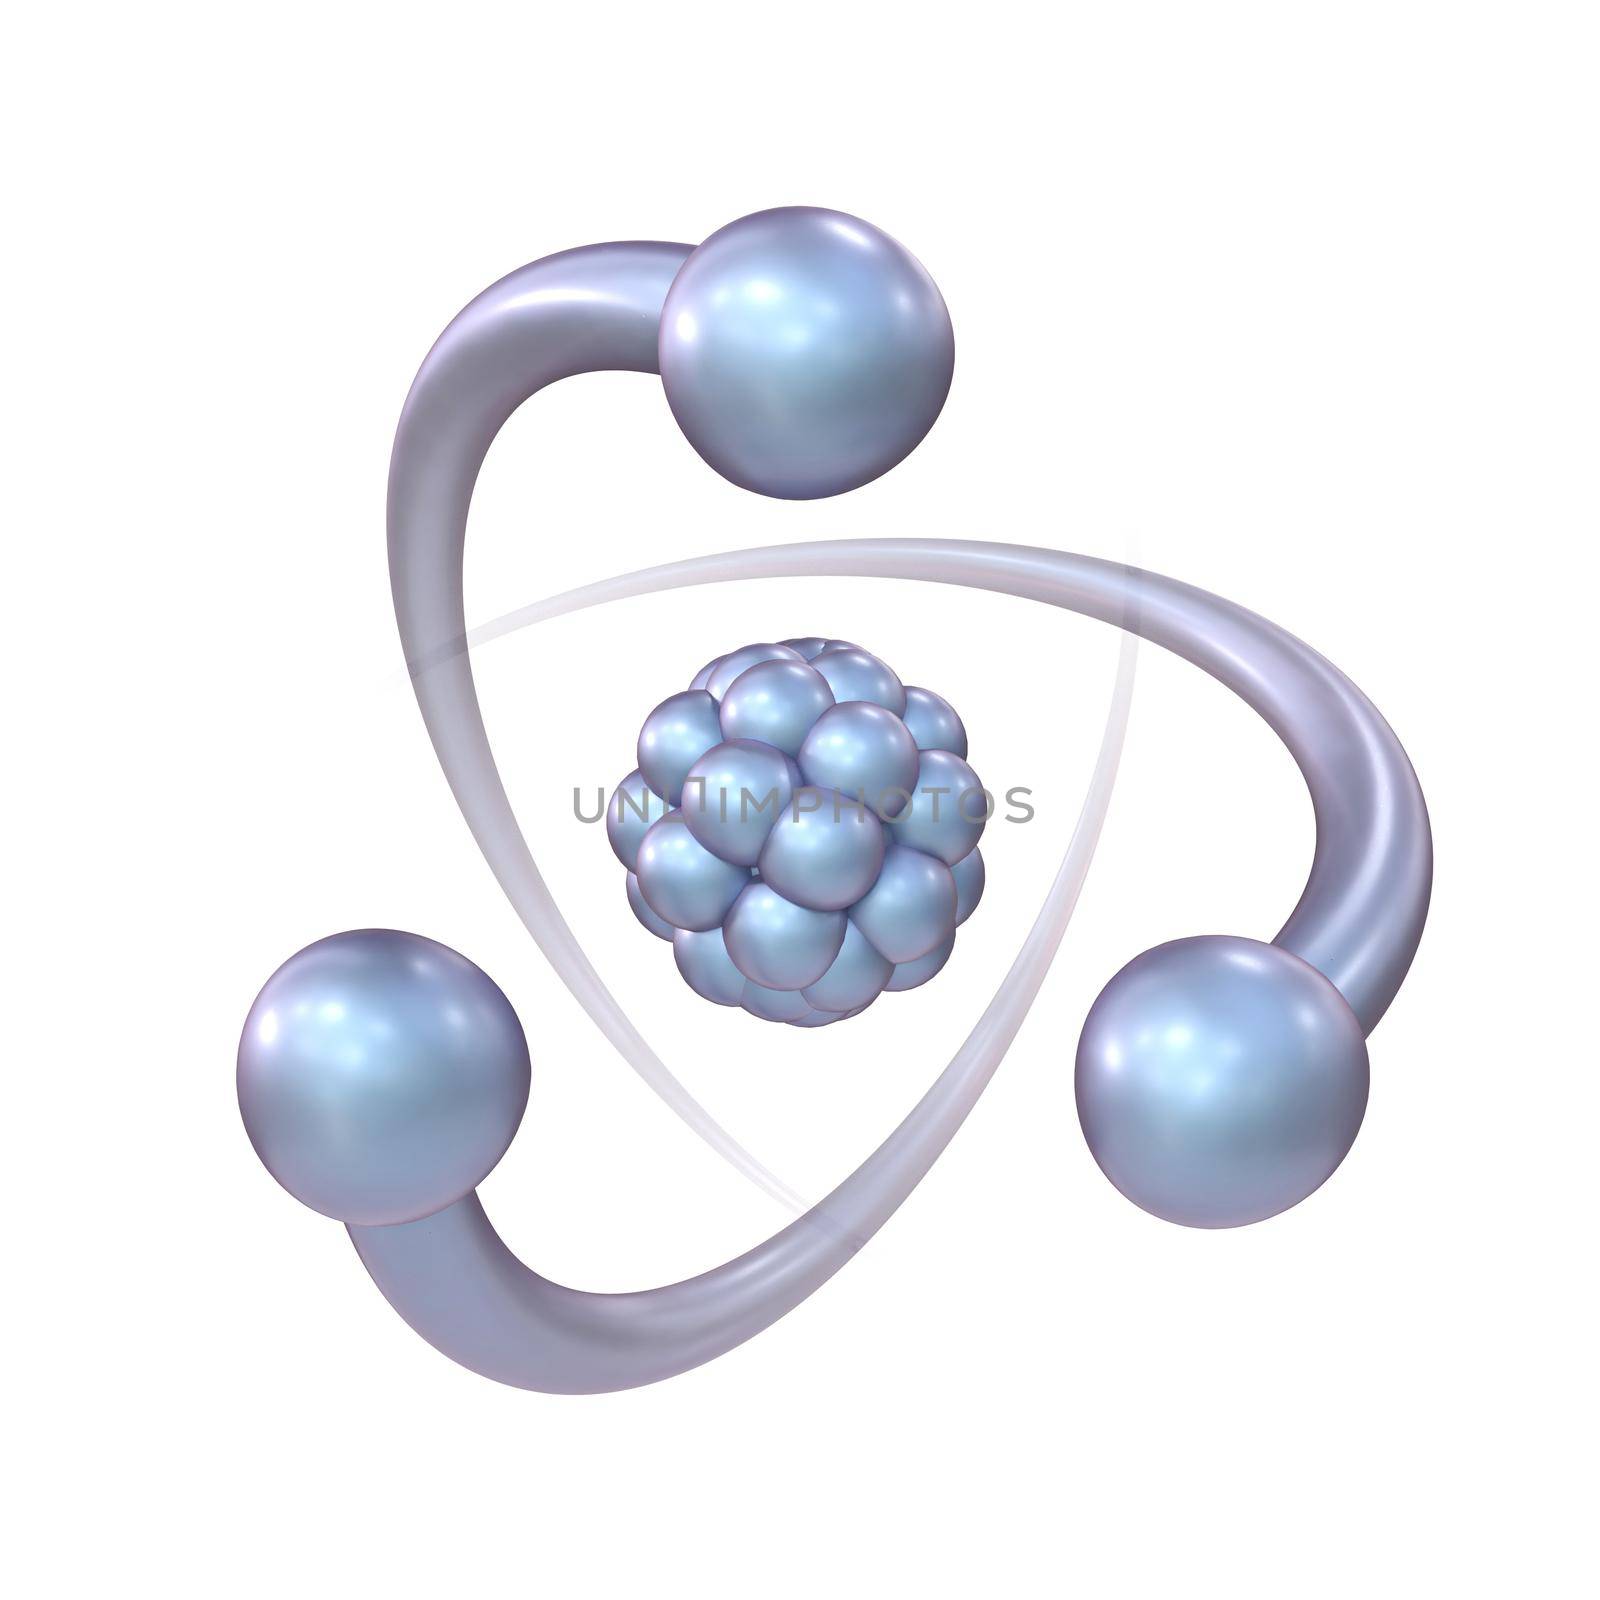 Blue violet atom sign 3D by djmilic